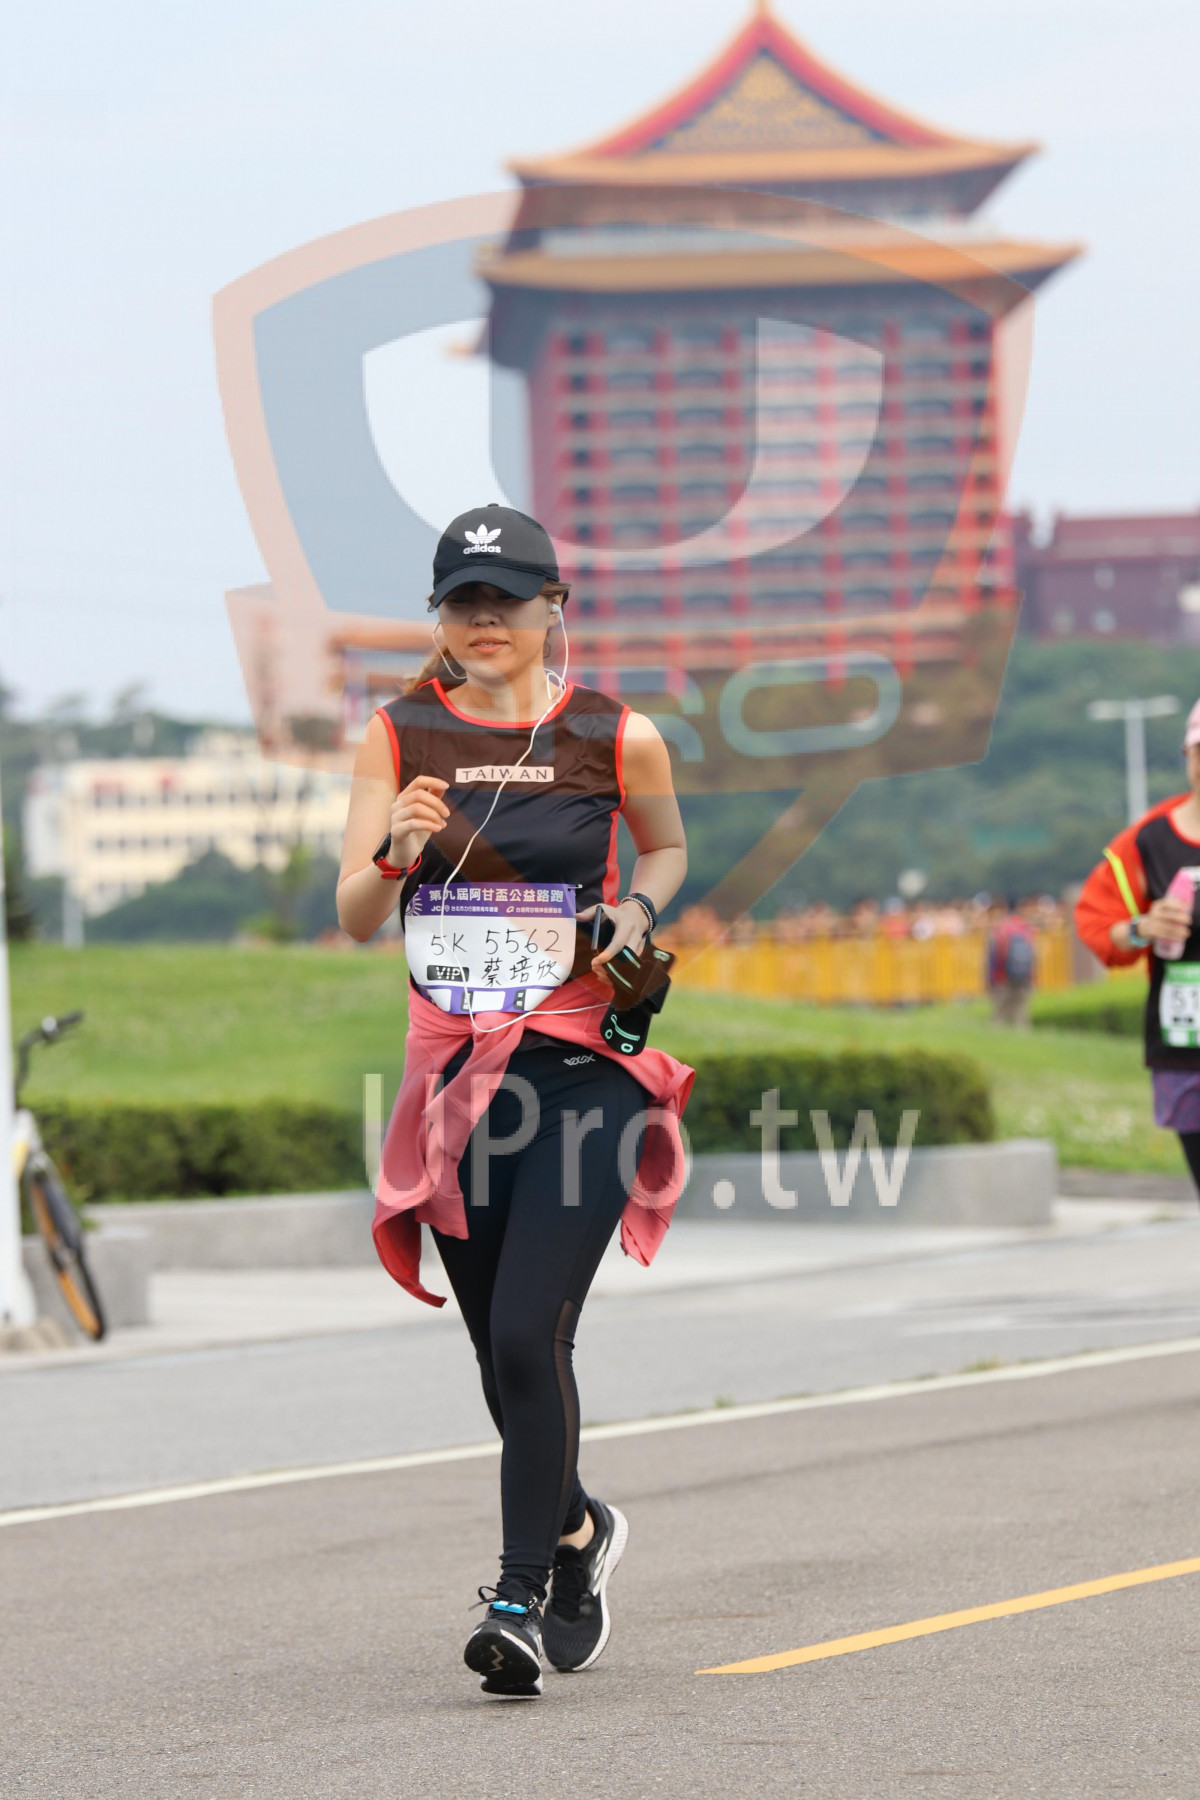 TAIWAN,2ん,5K 5562,IPI|2018 第九屆阿甘盃公益路跑|Soryu Asuka Langley